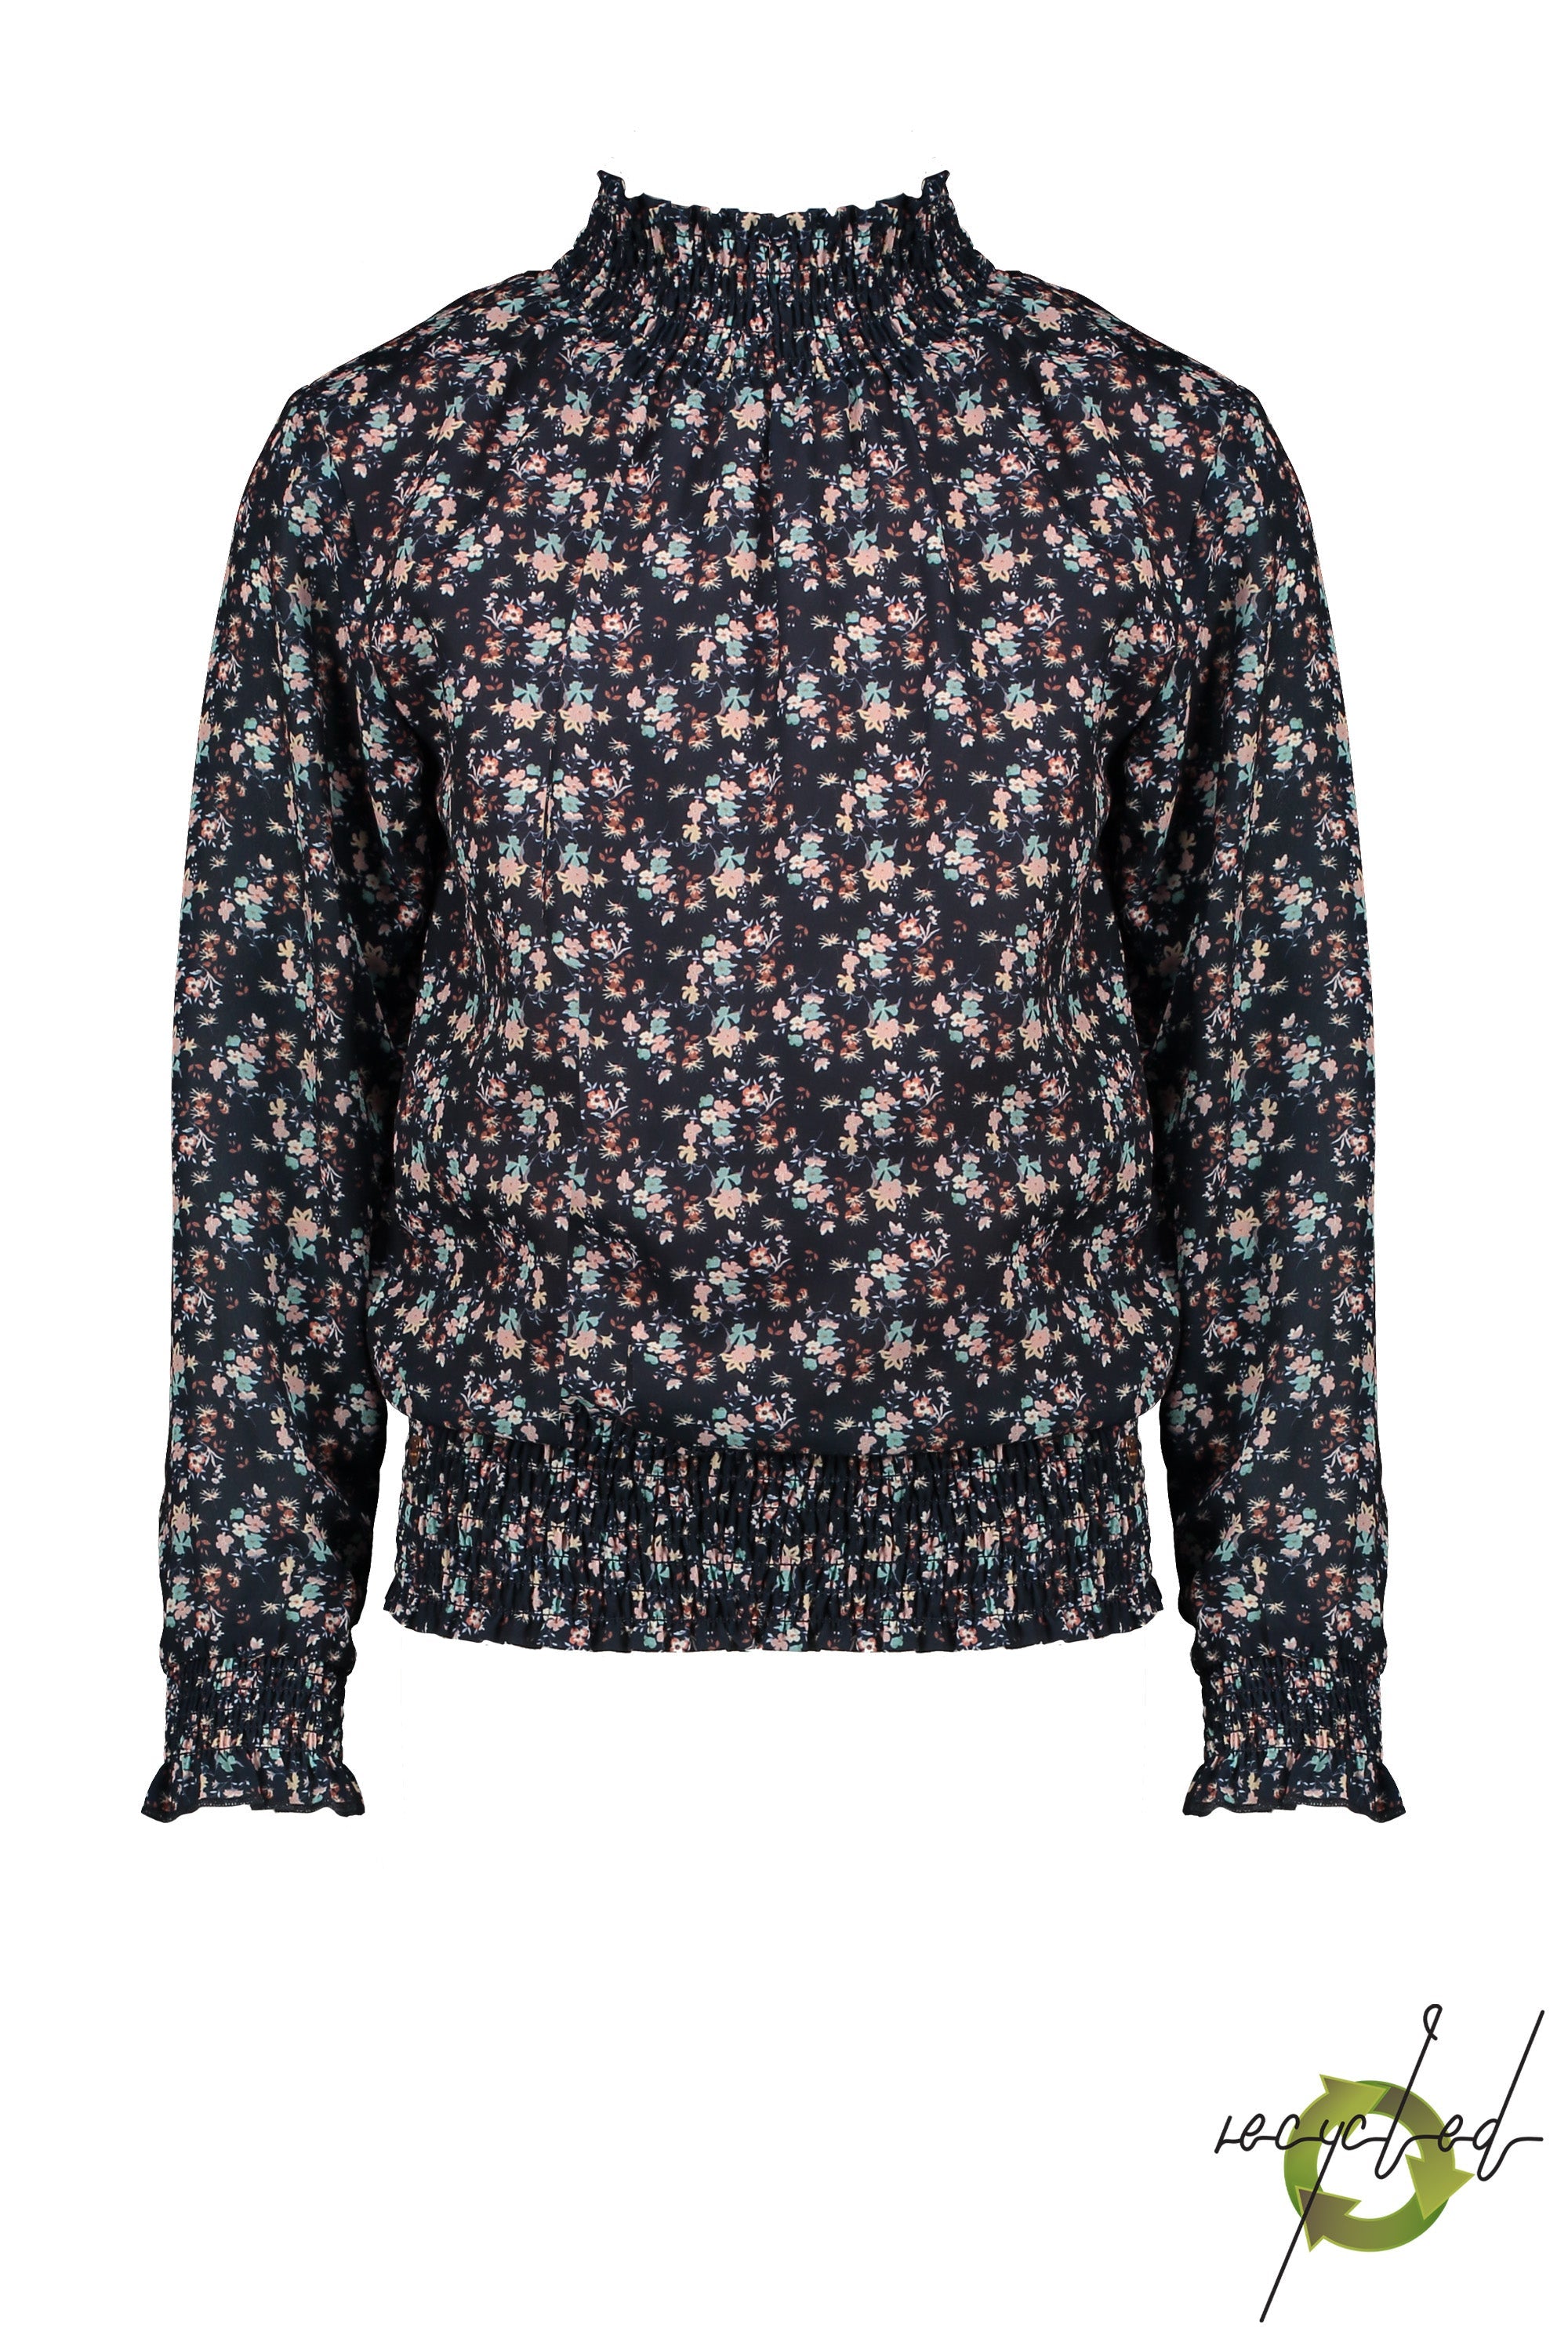 Meisjes Tipi blouse with smocked cuff/hem/neck van NoNo in de kleur Navy Blazer in maat 146/152.